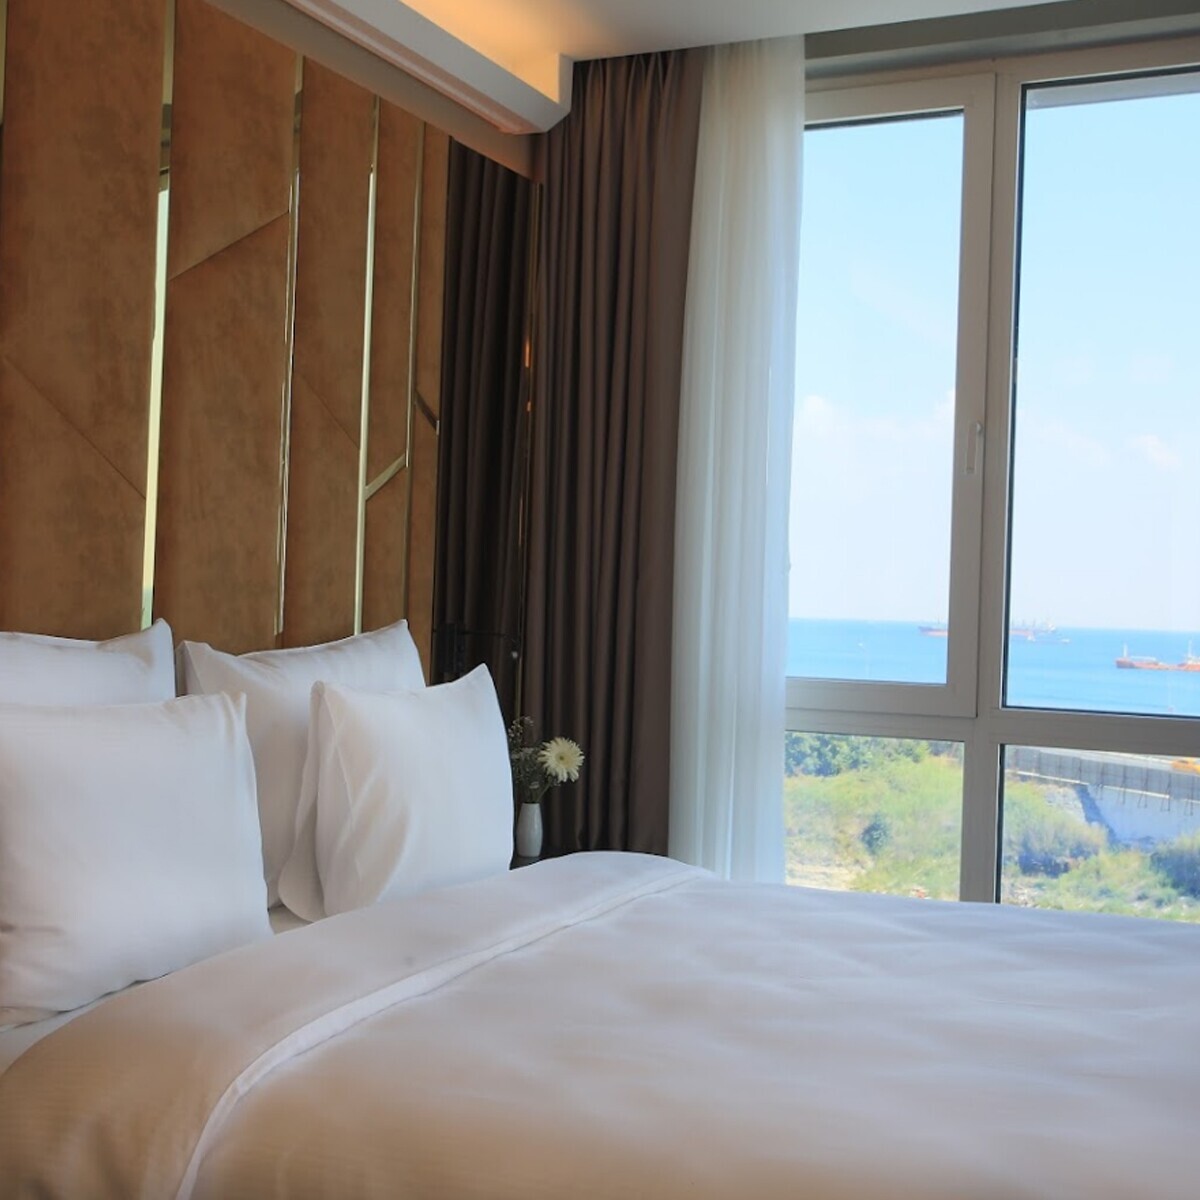 Ottoperla Hotel Zeytinburnu'nda Tek veya Çift Kişi Deniz Manzaralı Konaklama Seçenekleri